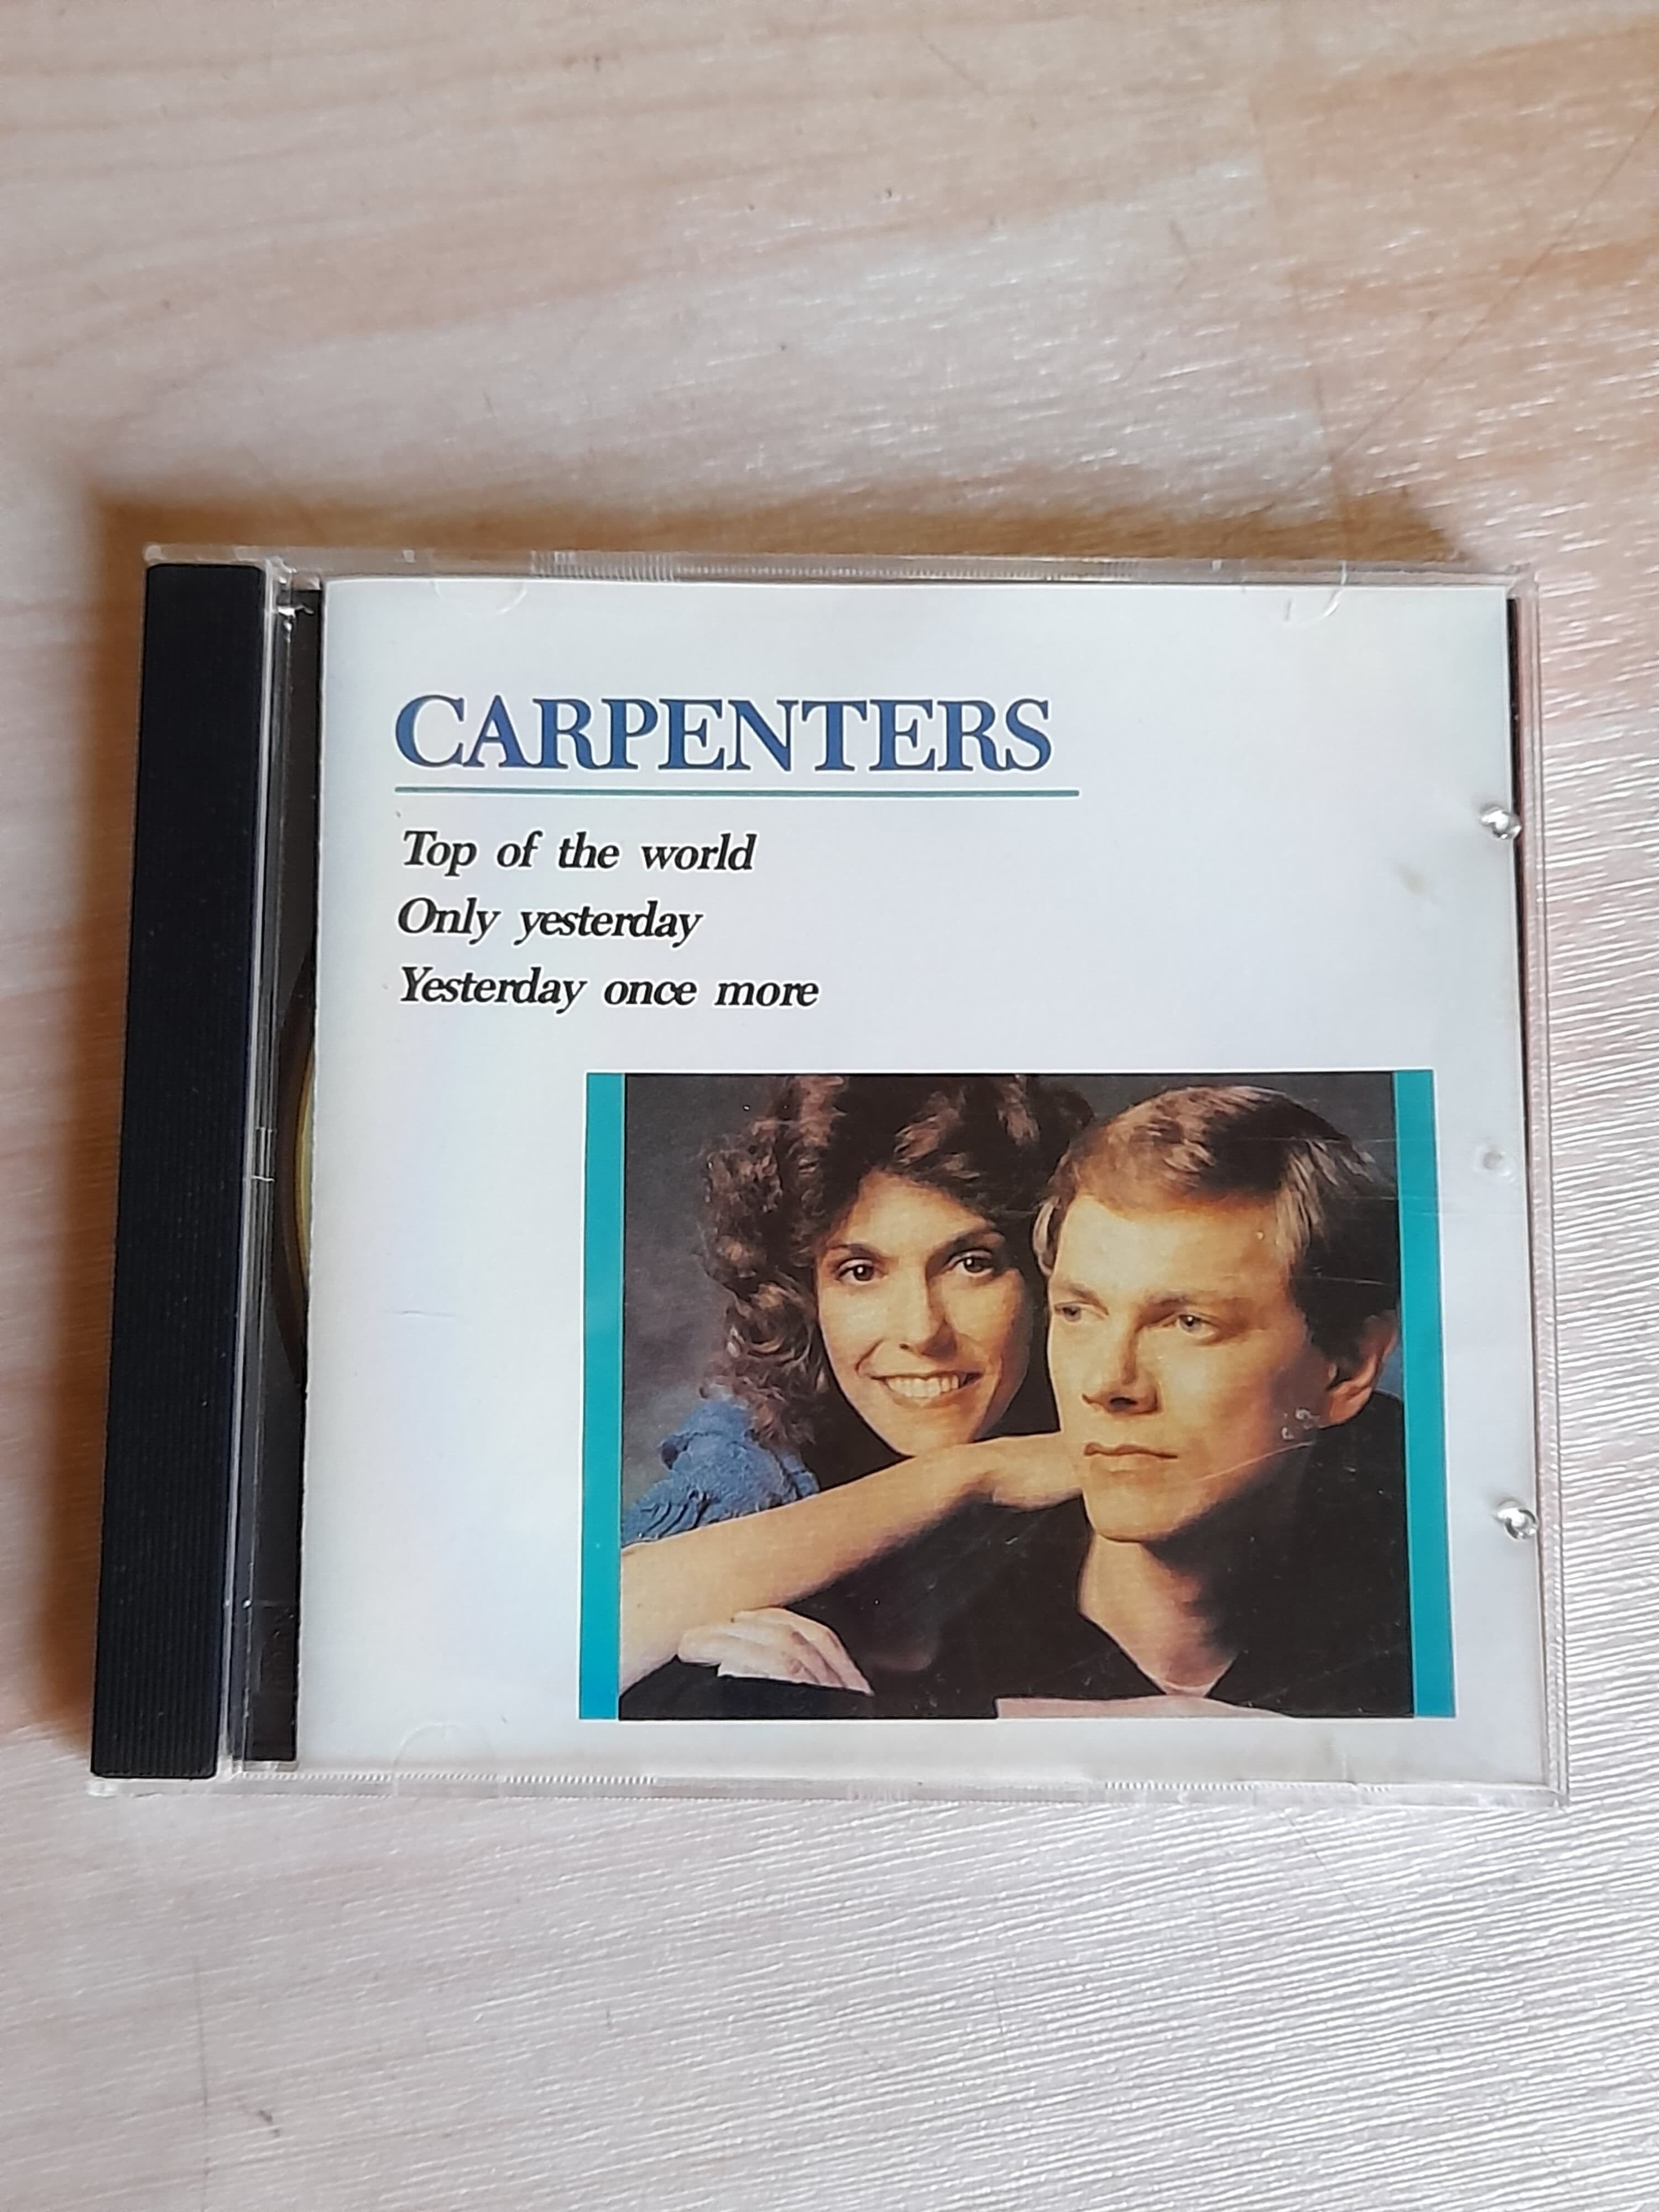 카펜터스(Carpenters) Best - Top of the world